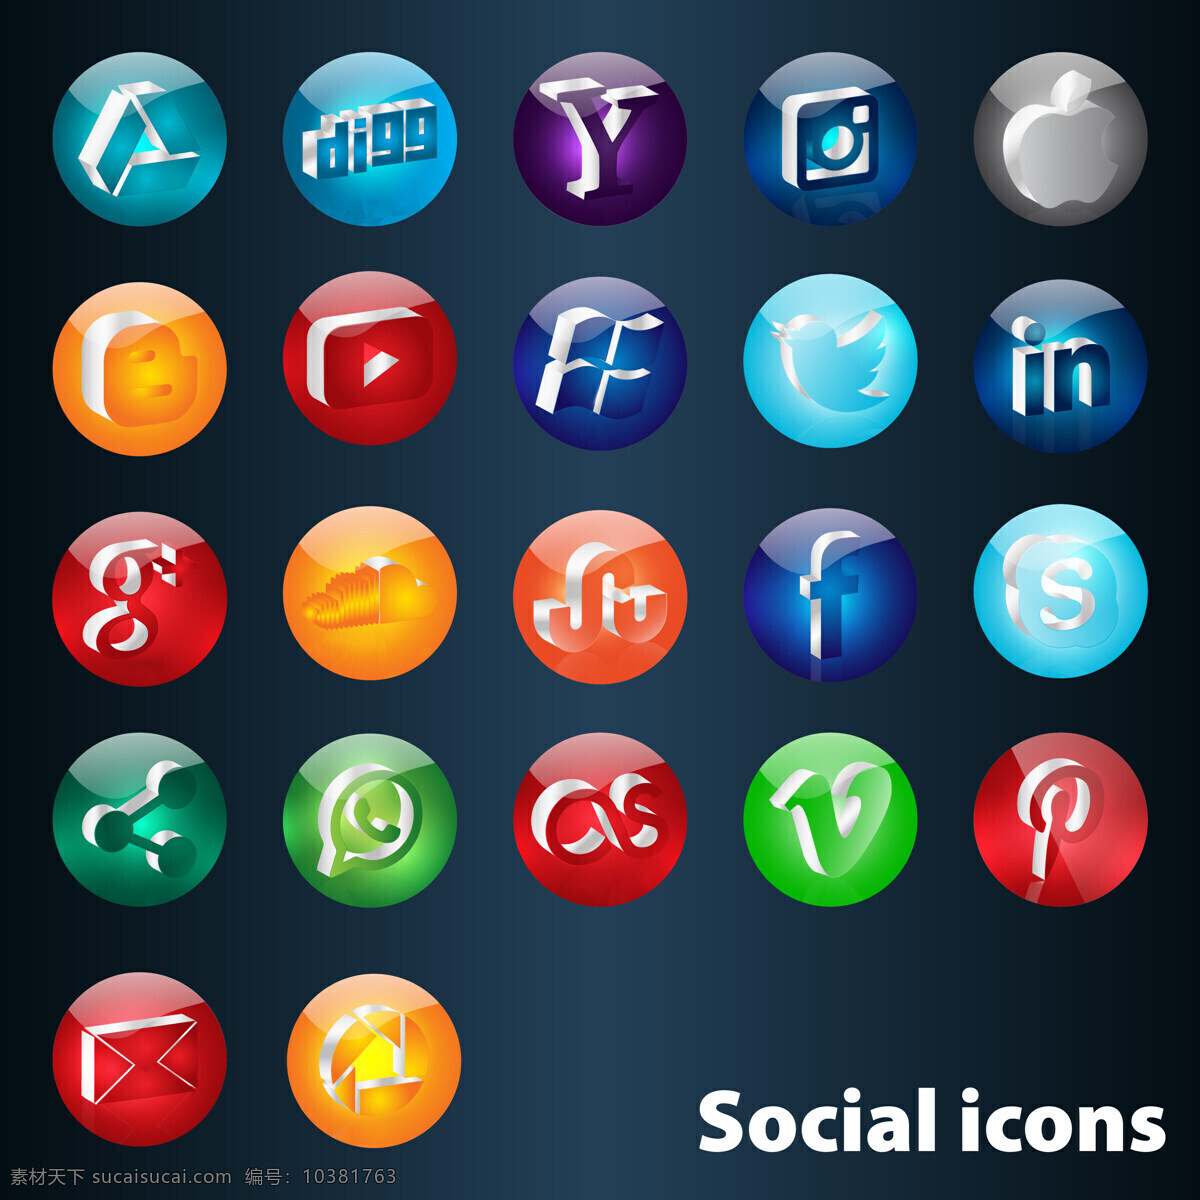 社会图标按钮 图标按钮 社会图标 按钮 社会 矢量素材